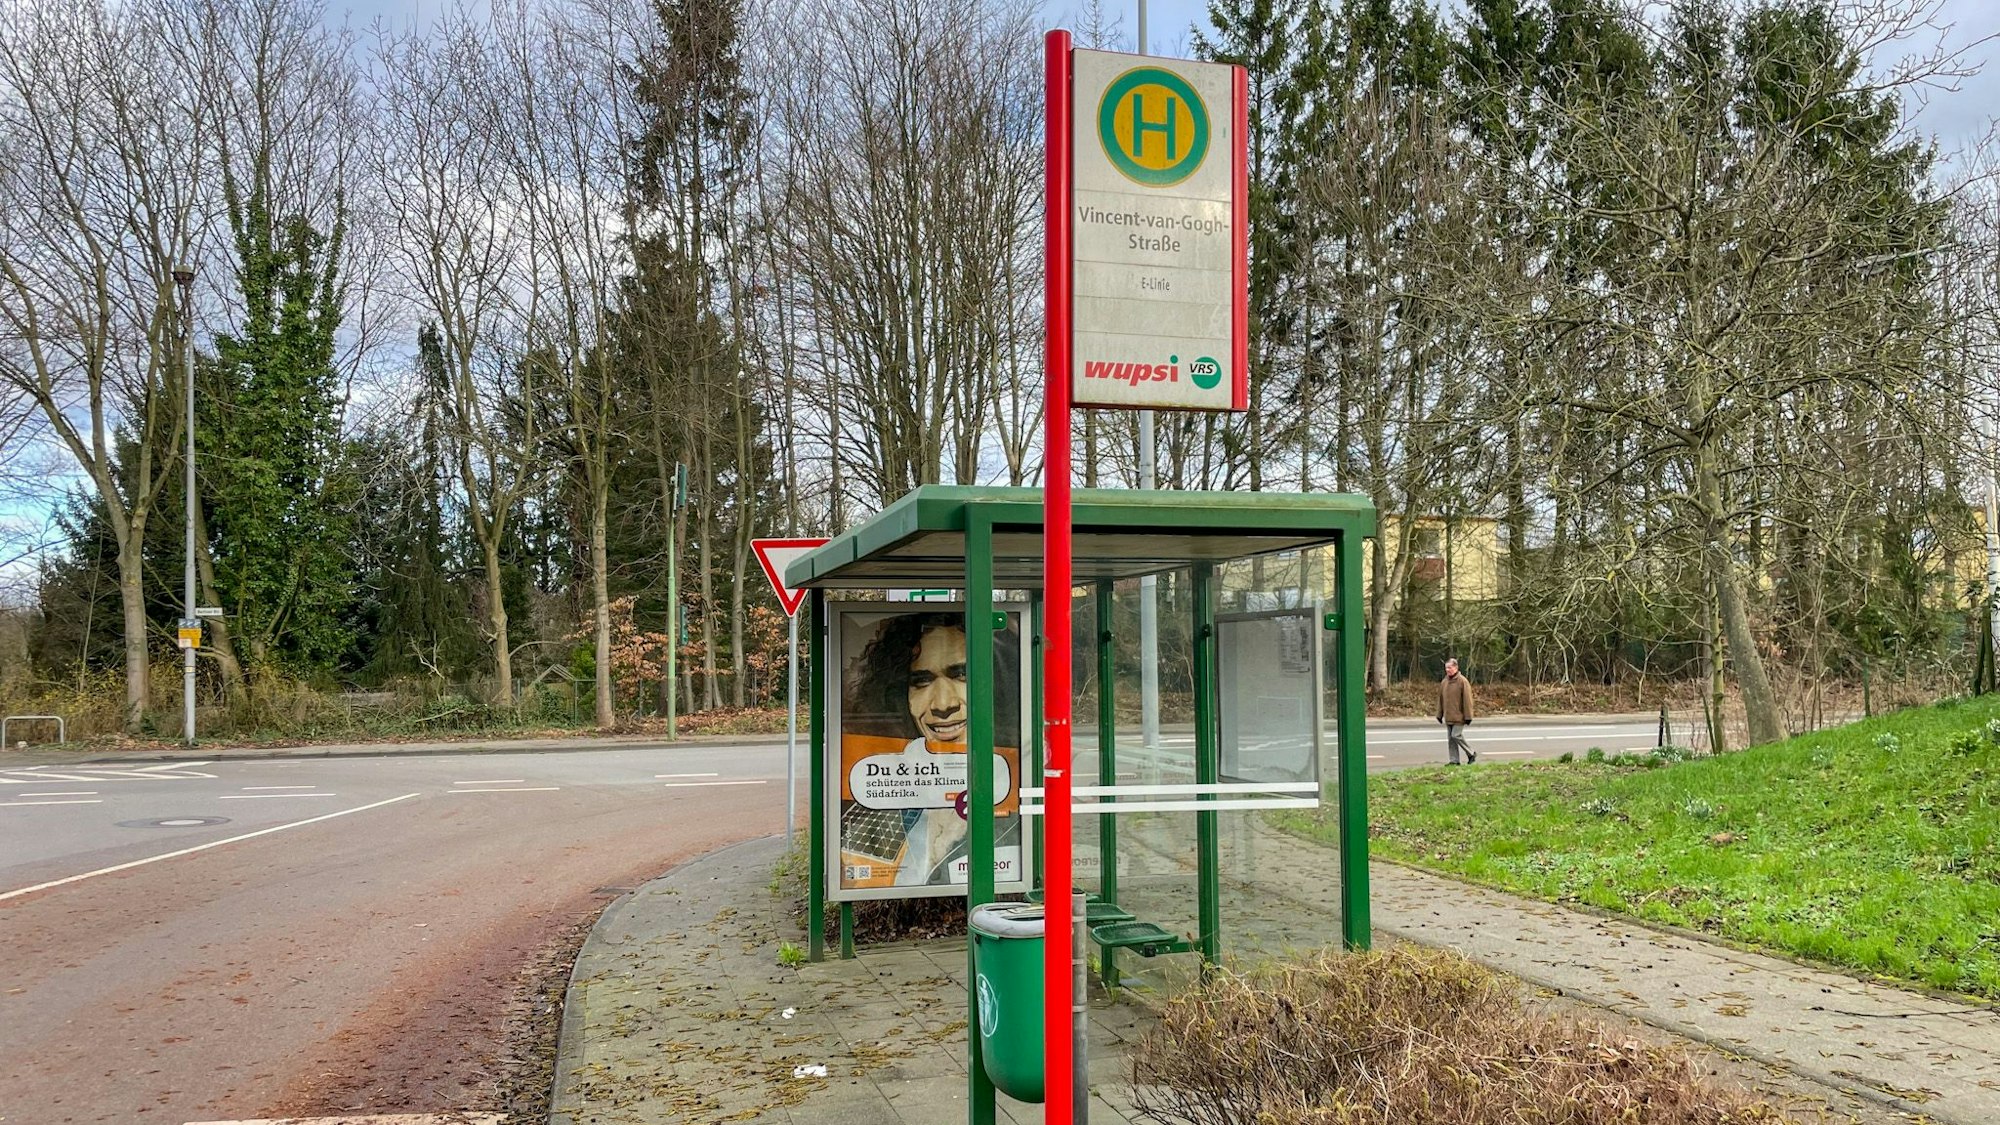 Während die SB22 in Fahrtrichtung Leverkusen-Mitte die Haltestelle Vincent-van-Gogh-Straße anfährt, wird diese in der Gegenrichtung nicht angefahren.